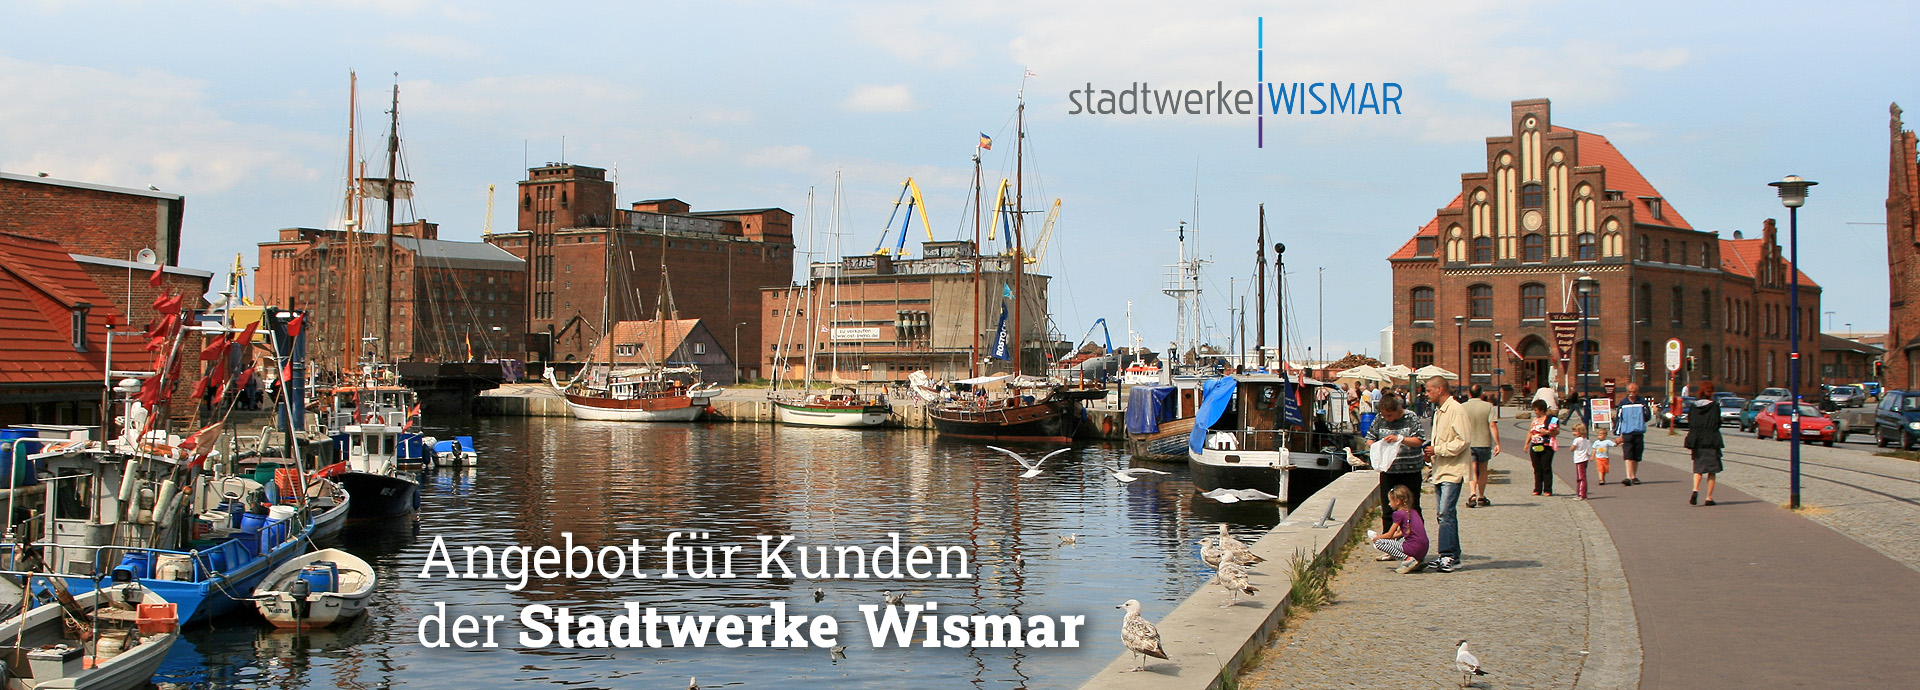 Angebot für Kunden der Stadtwerke Wismar